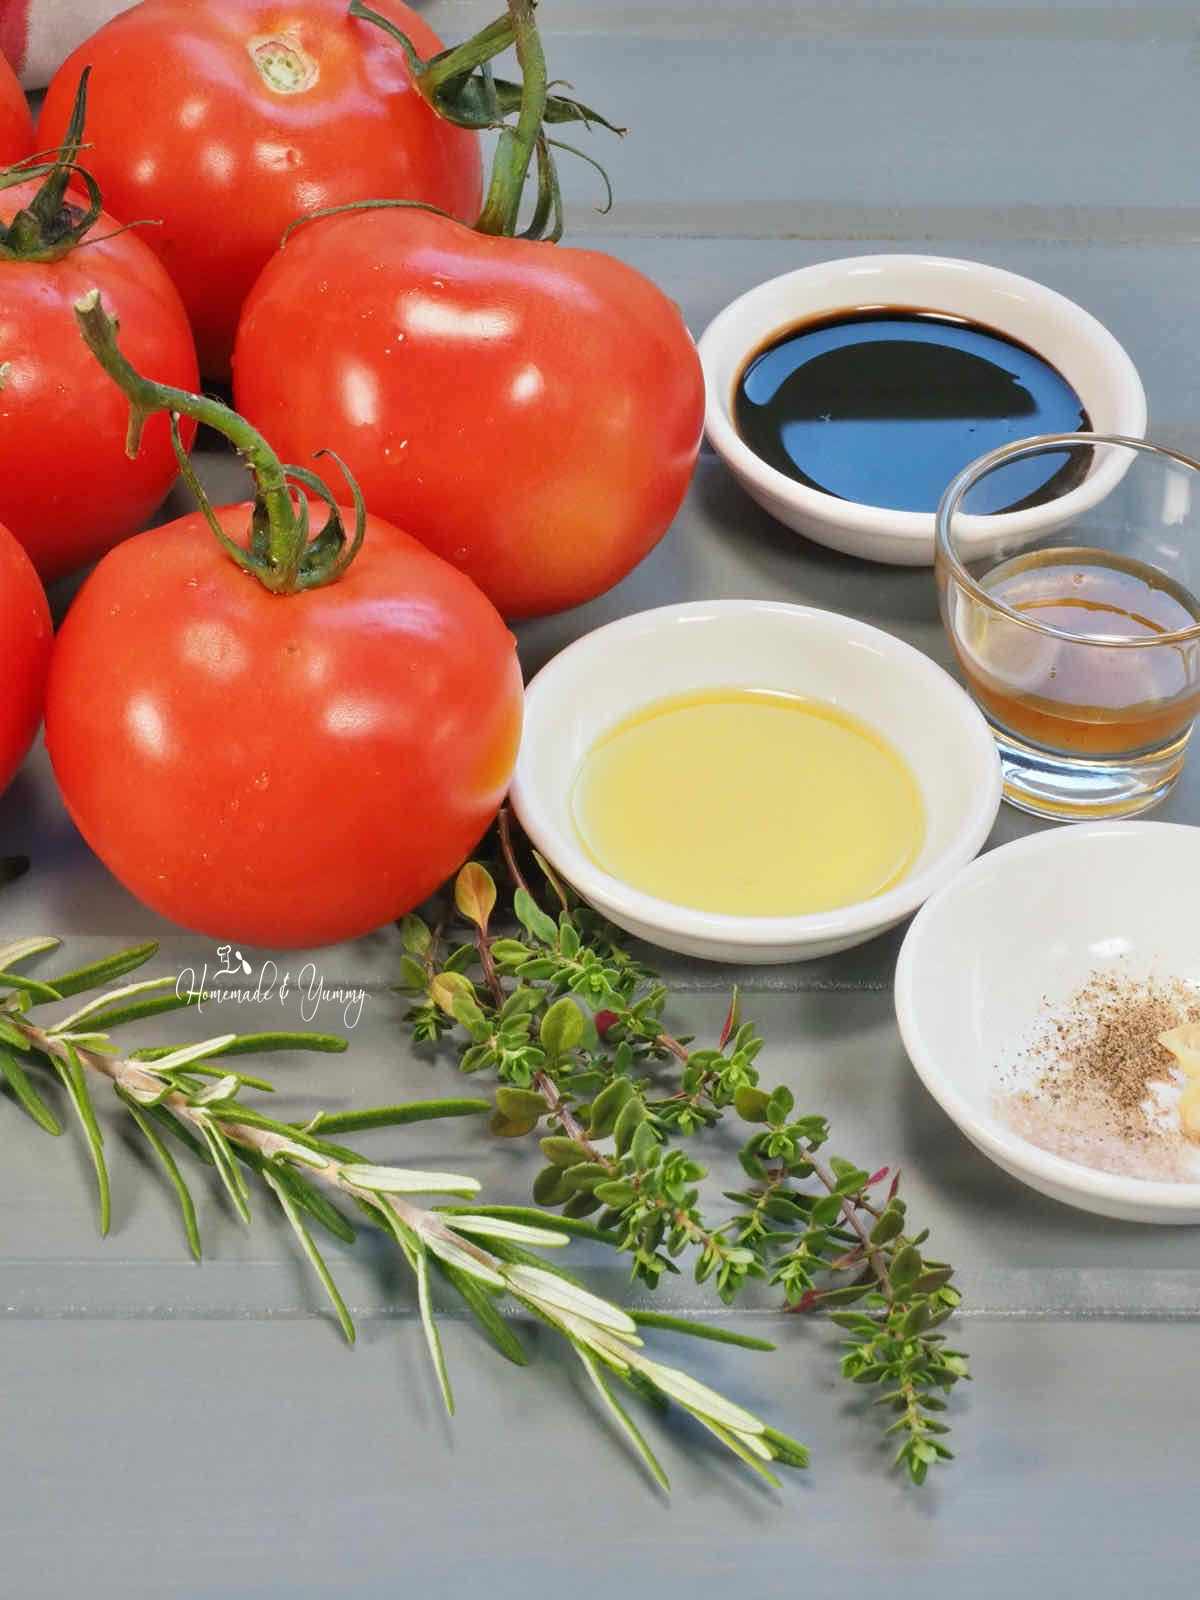 Ingredients to make tomato jam.